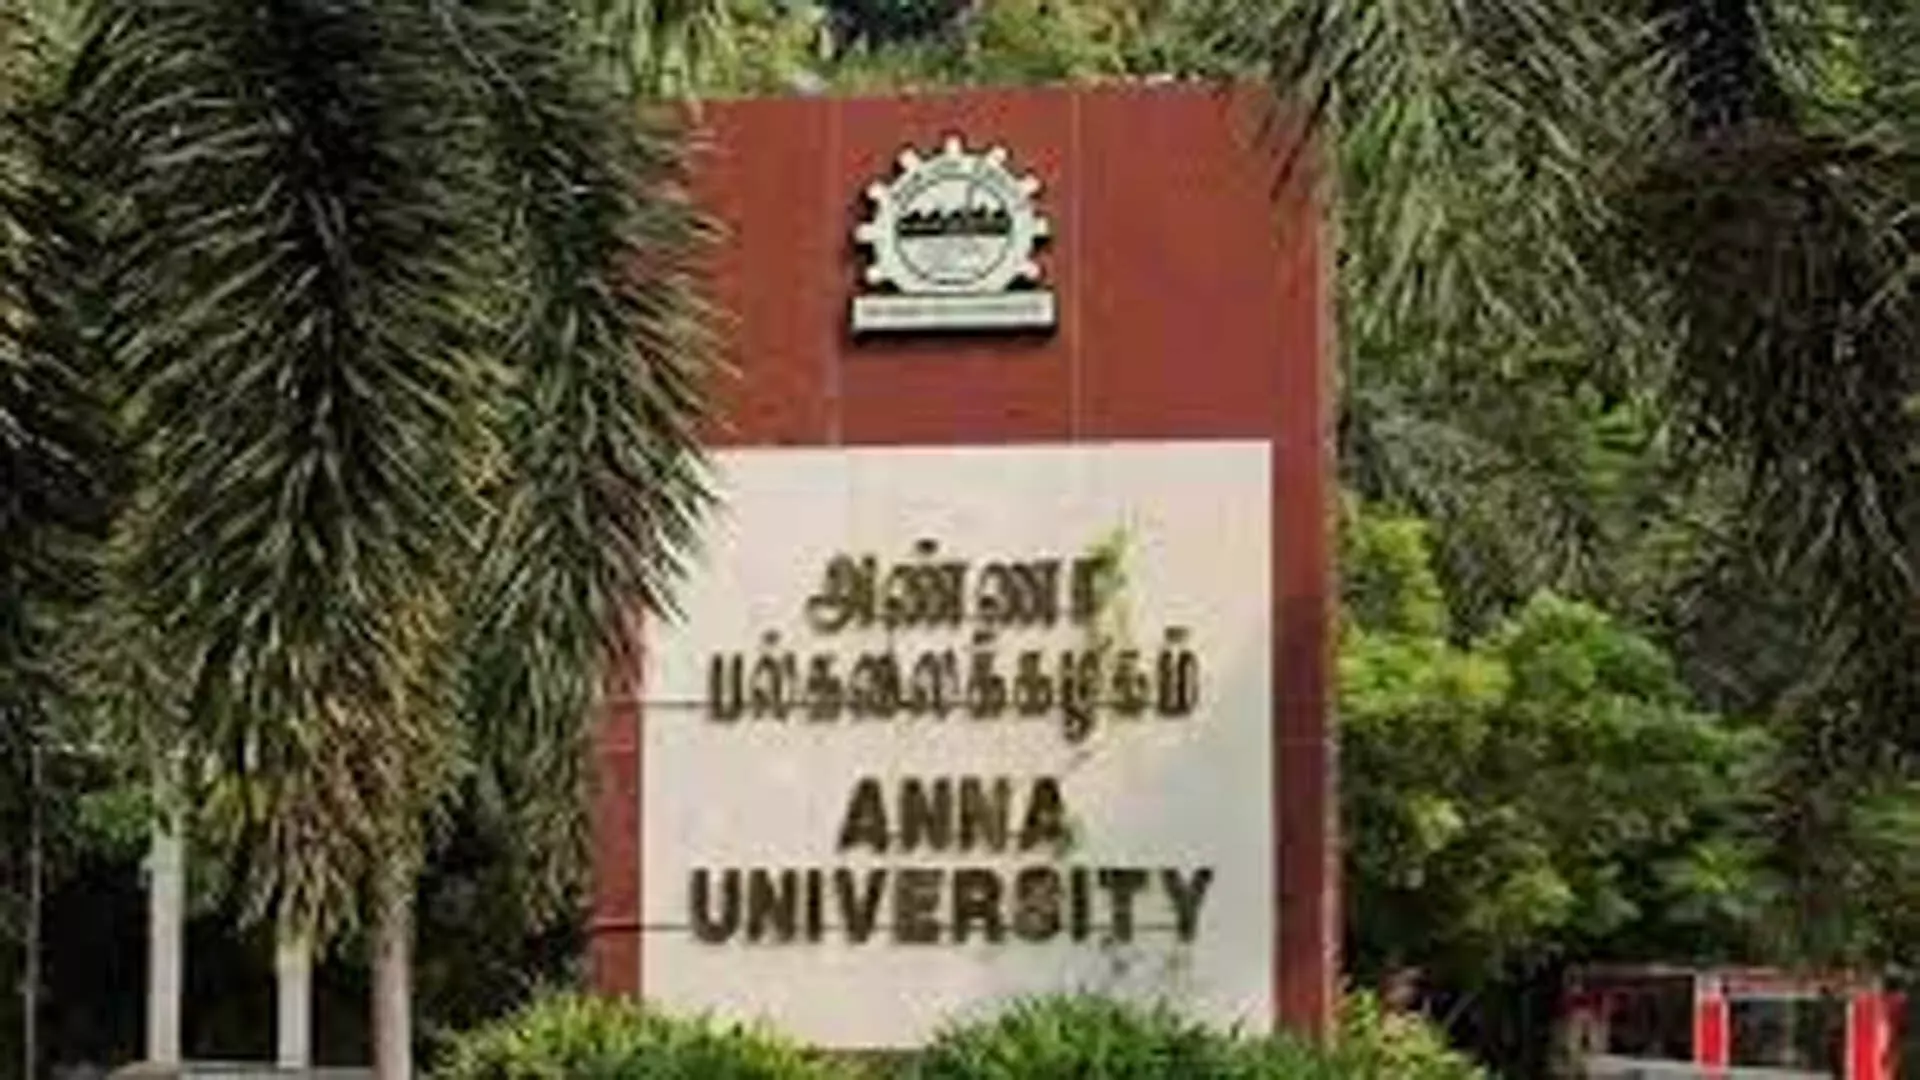 Chennai News: अन्ना विश्वविद्यालय ने योग पर पाठ्यक्रम शुरू किया